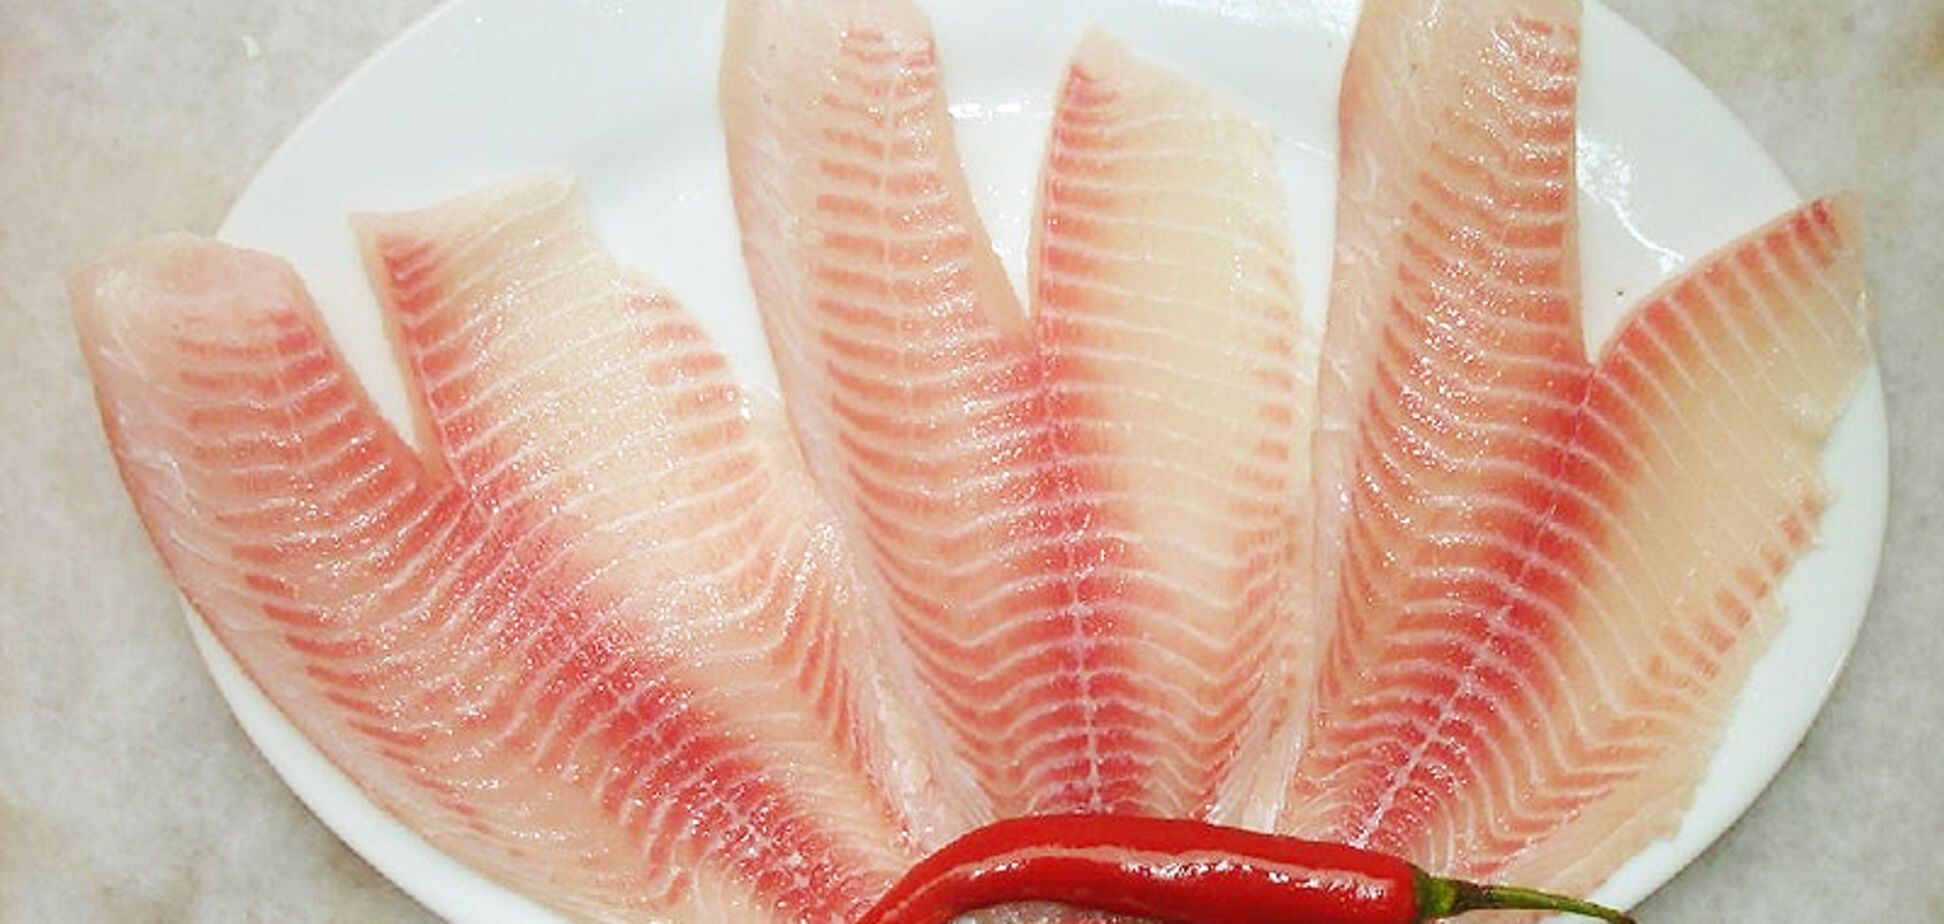 Терміново відмовитися: медики назвали рибу, яку не можна їсти